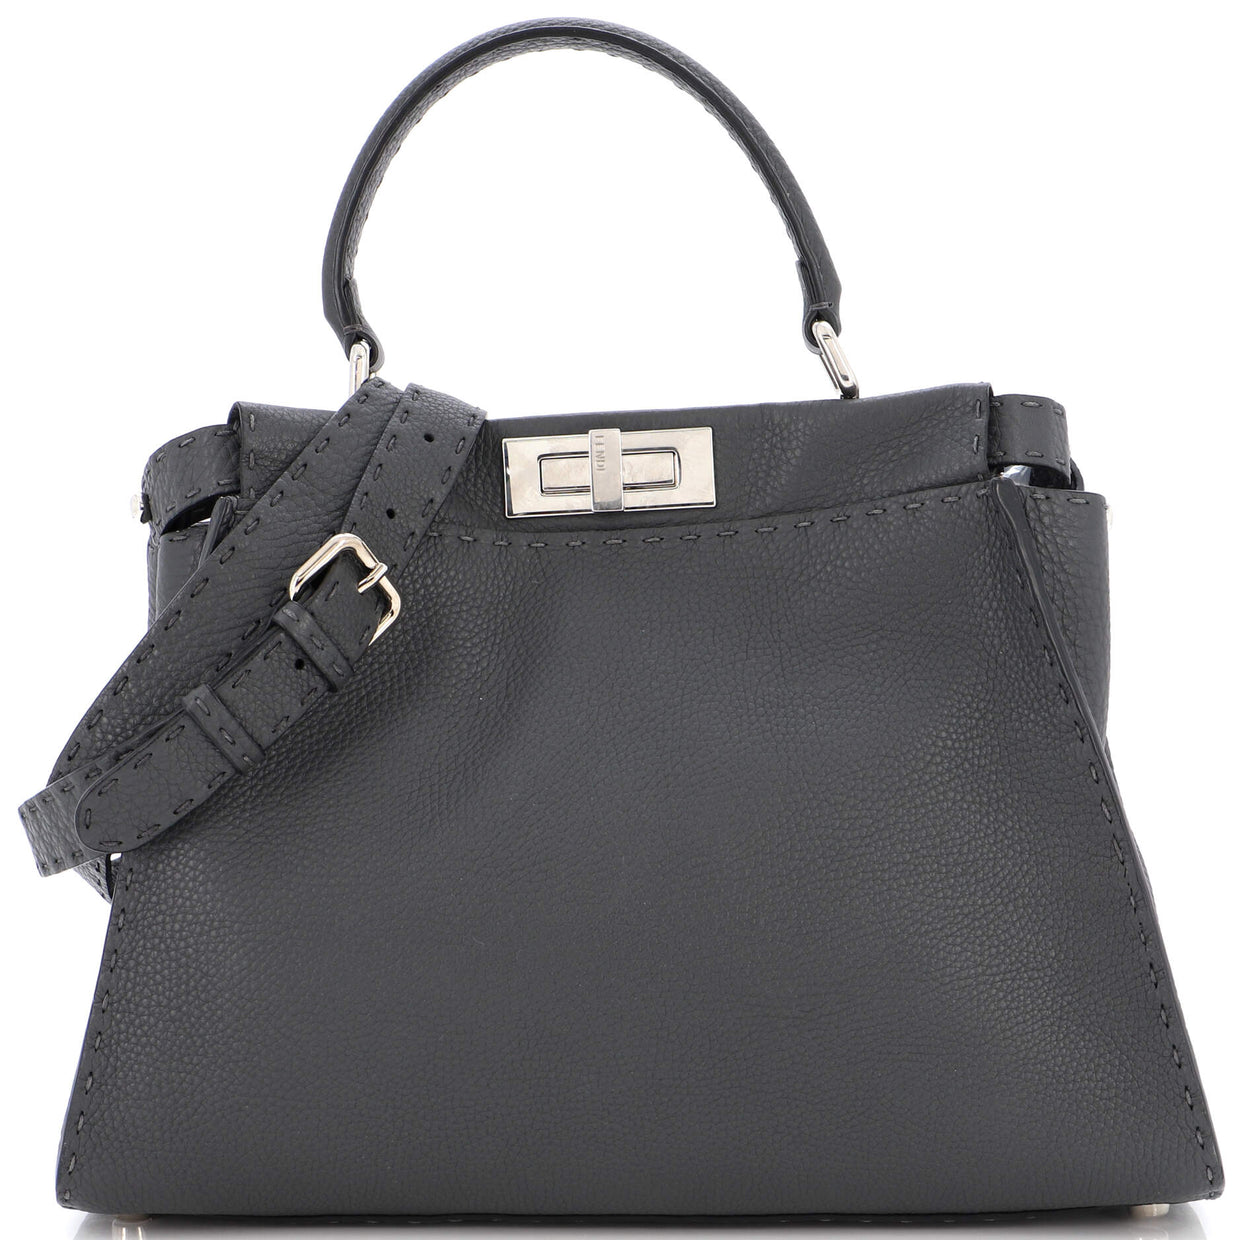 Fendi Selleria Peekaboo Bag Leather Medium Gray 2109381